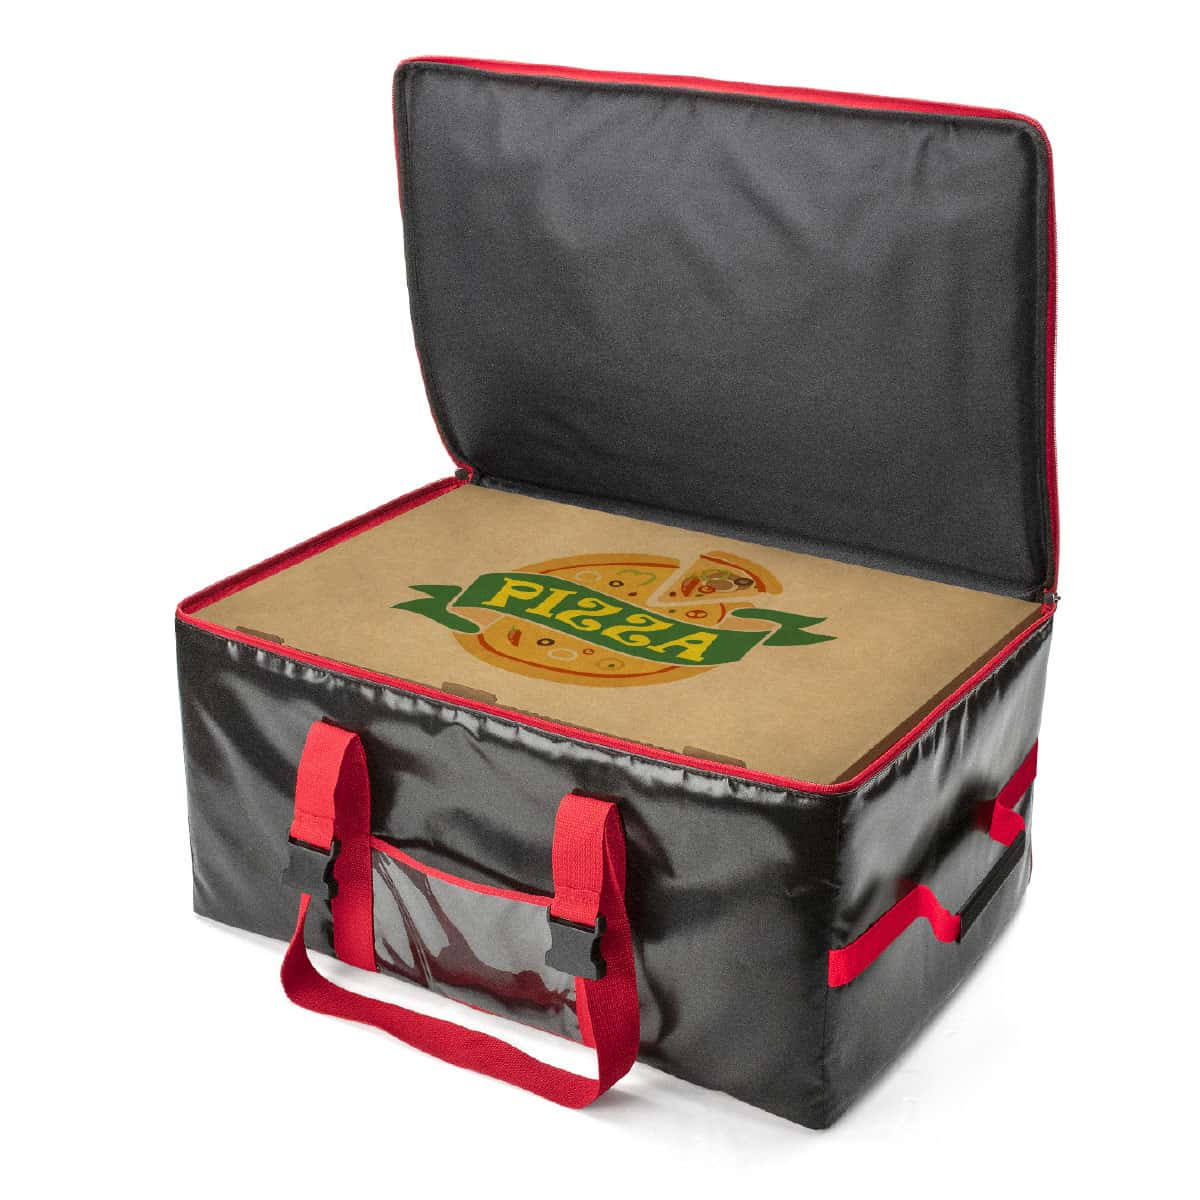 Può contenere fino a 5 cartoni pizza dimensione 60x40 cm